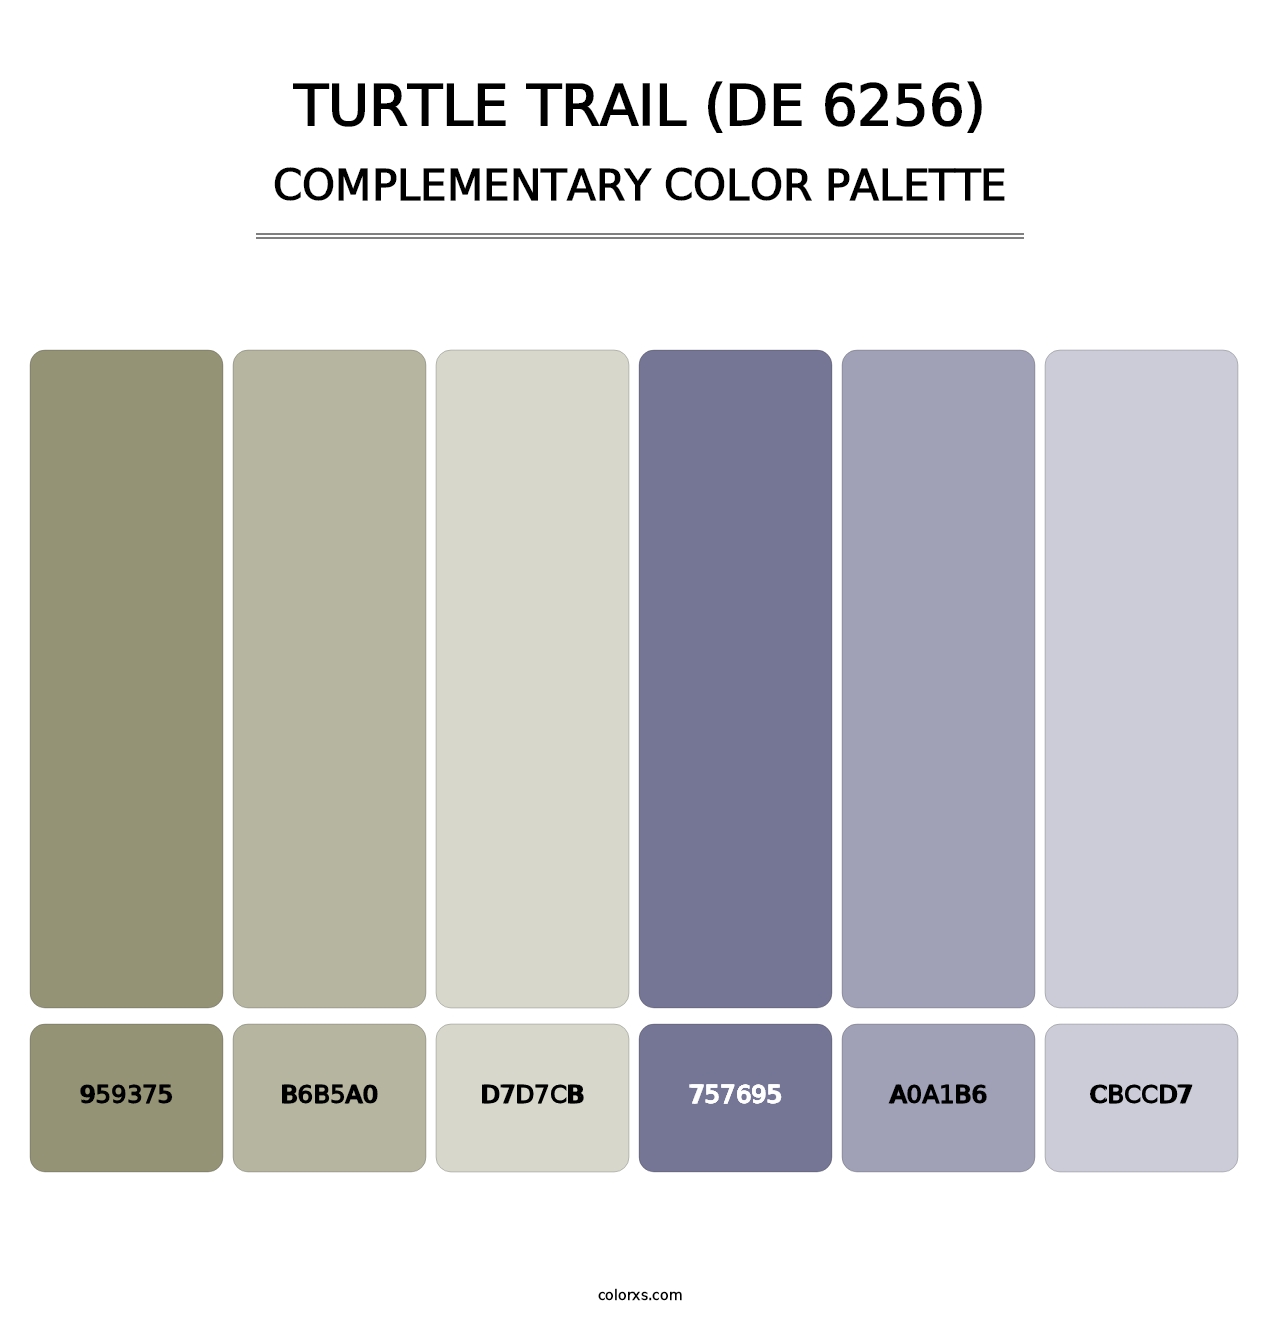 Turtle Trail (DE 6256) - Complementary Color Palette